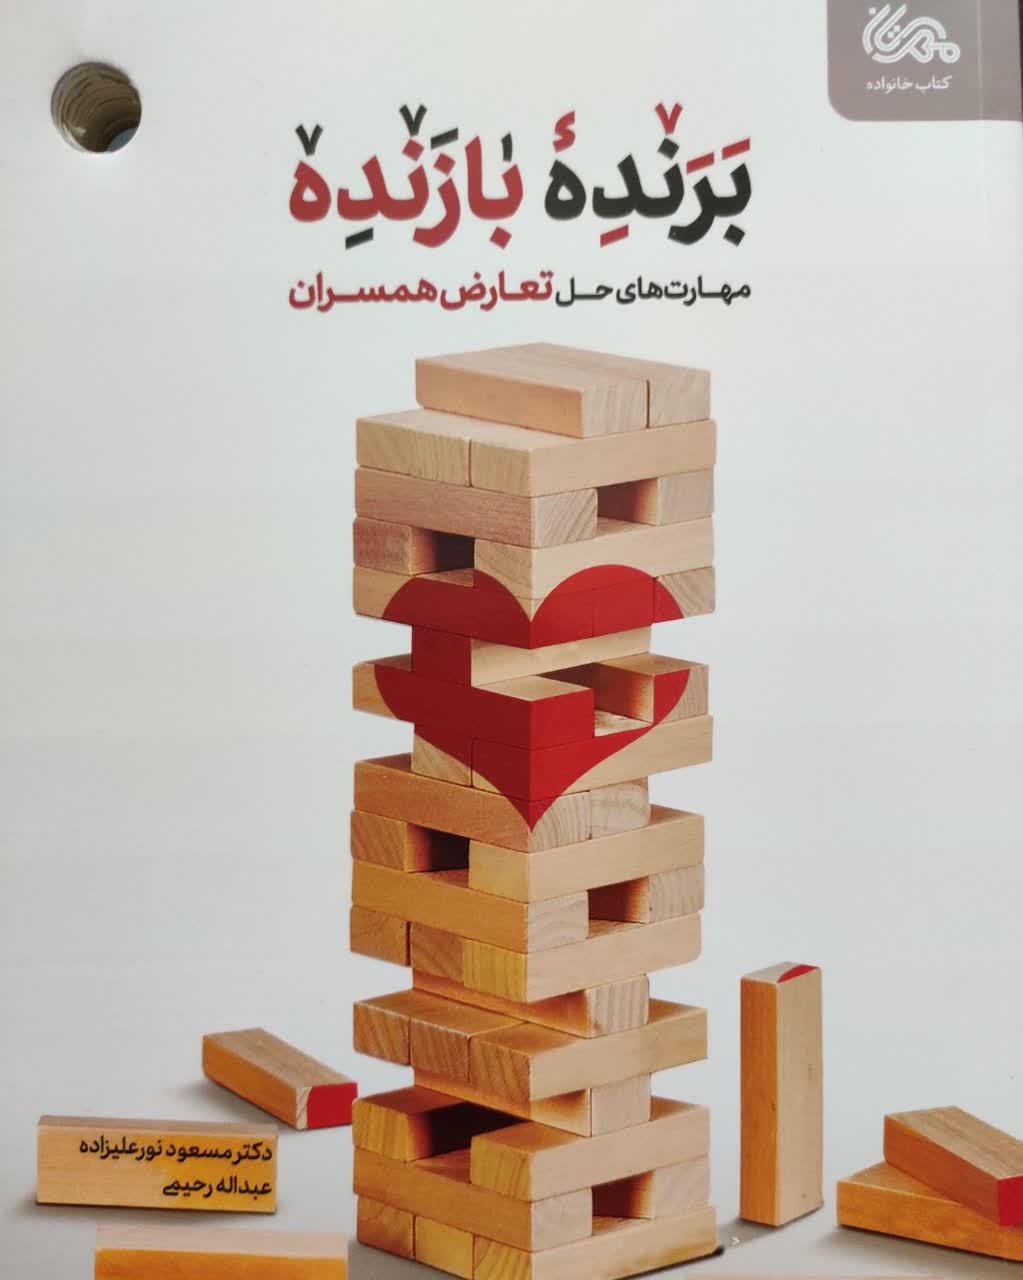 چاپ دو کتاب توسط حجت الاسلام و المسلمین عبدالله رحیمی زیدعزه